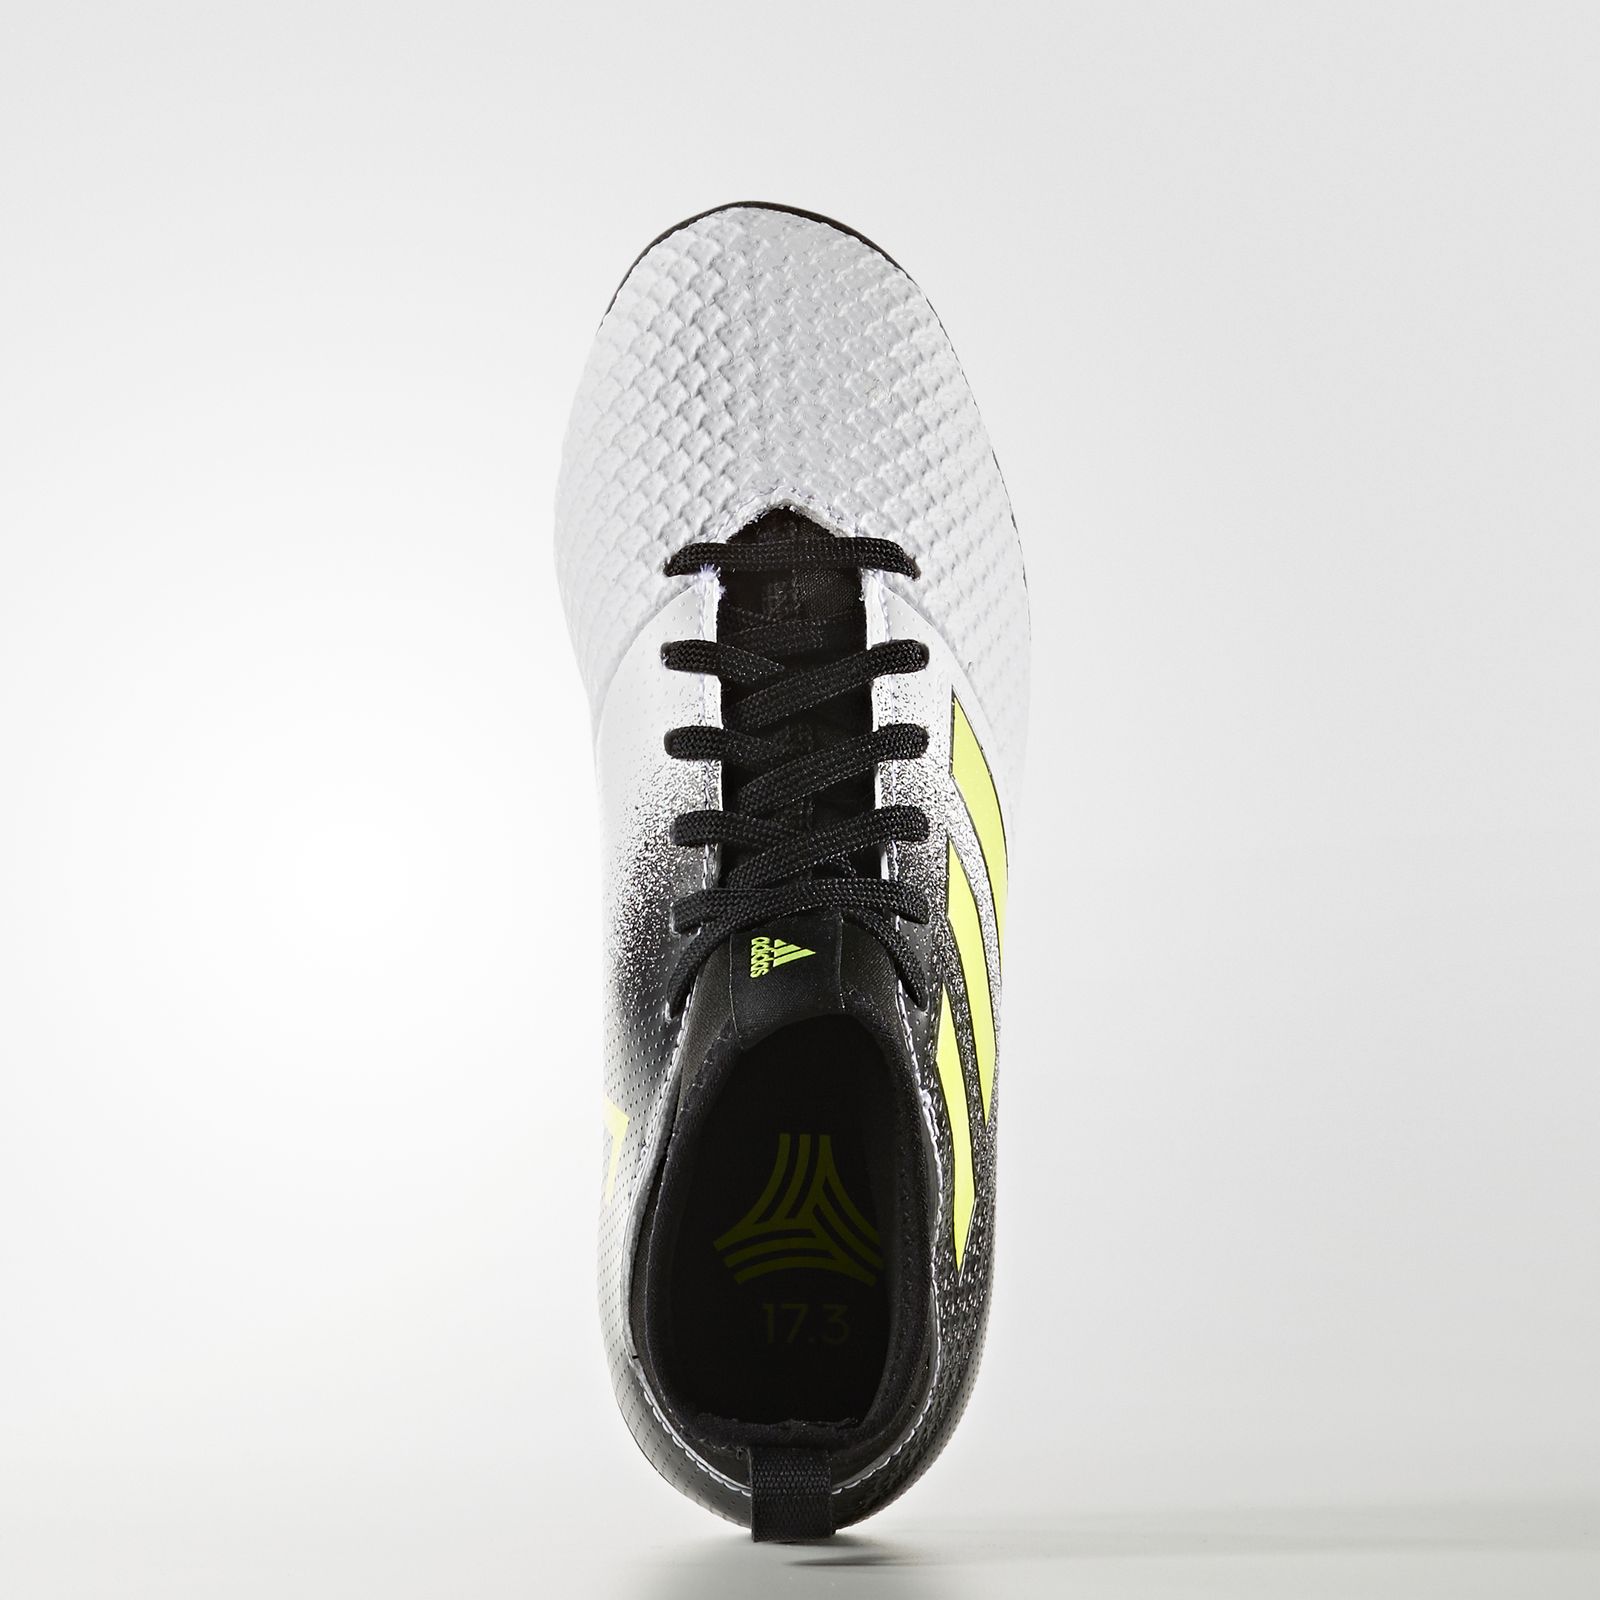  کفش فوتبال بچگانه آدیداس مدل ACE TANGO17.3 S77085 -  - 2